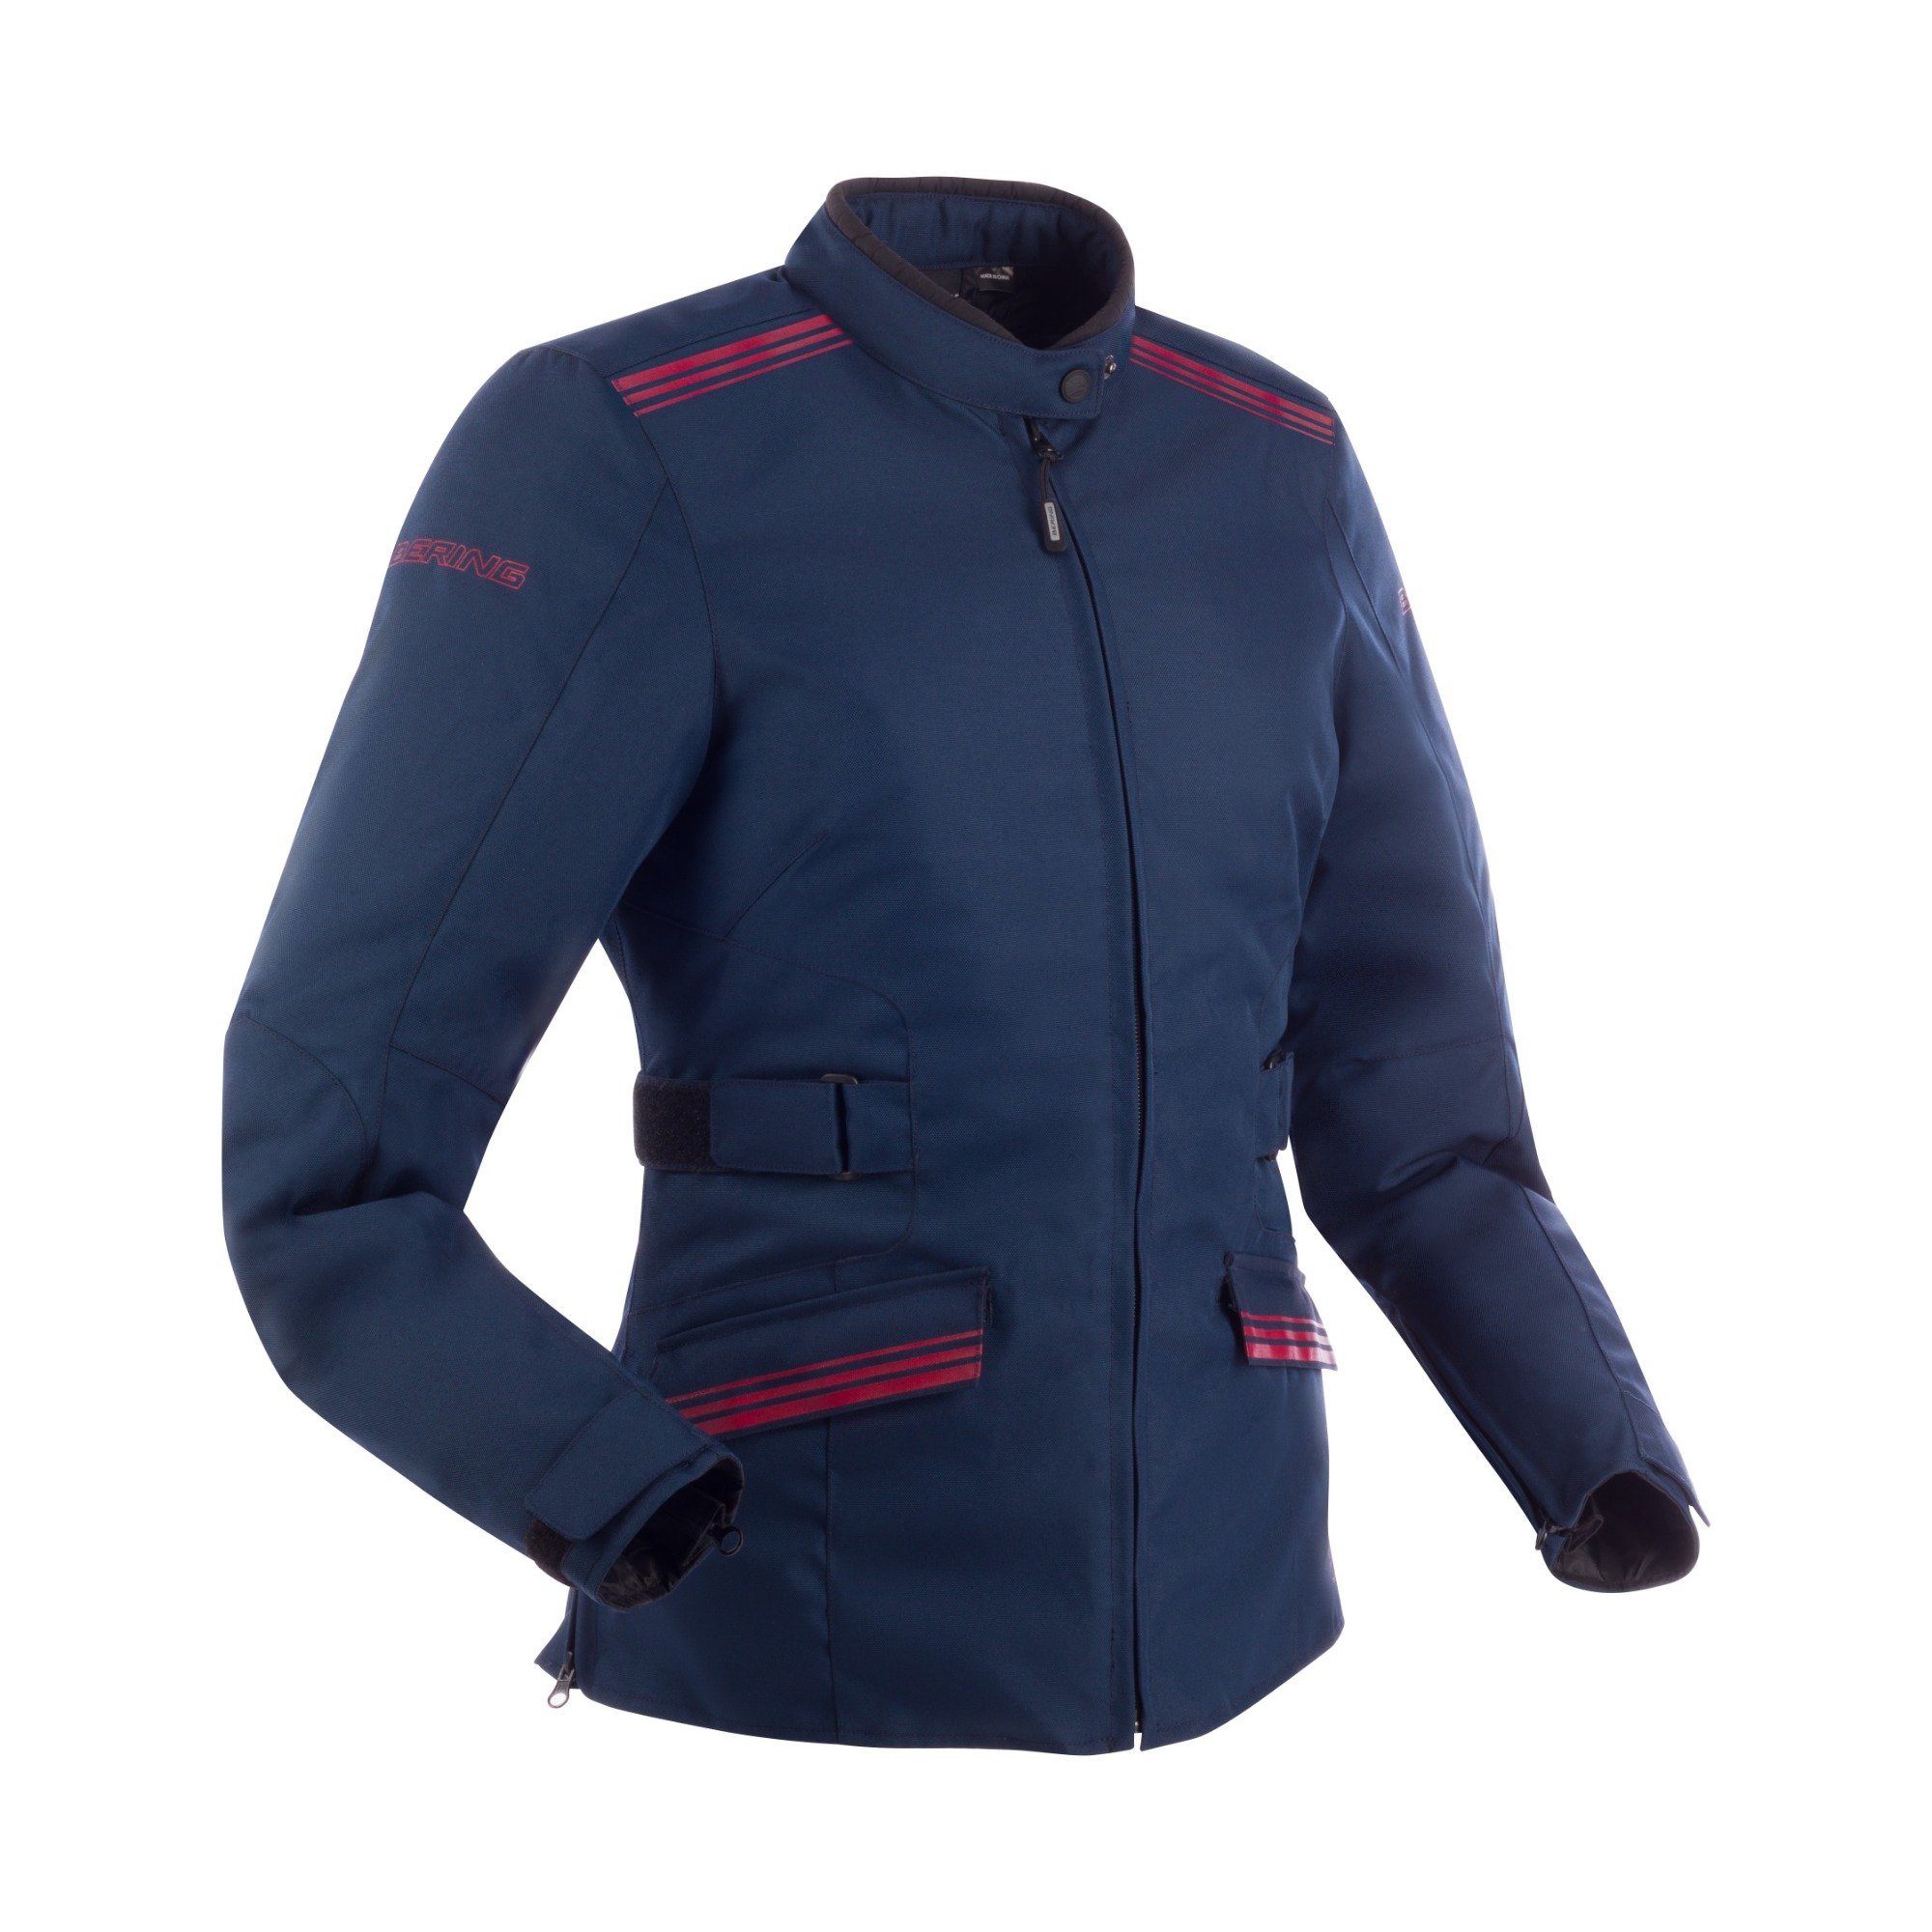 Image of Bering Shine Jacket Lady Navy Blue Burgundy Size T4 ID 3660815169988